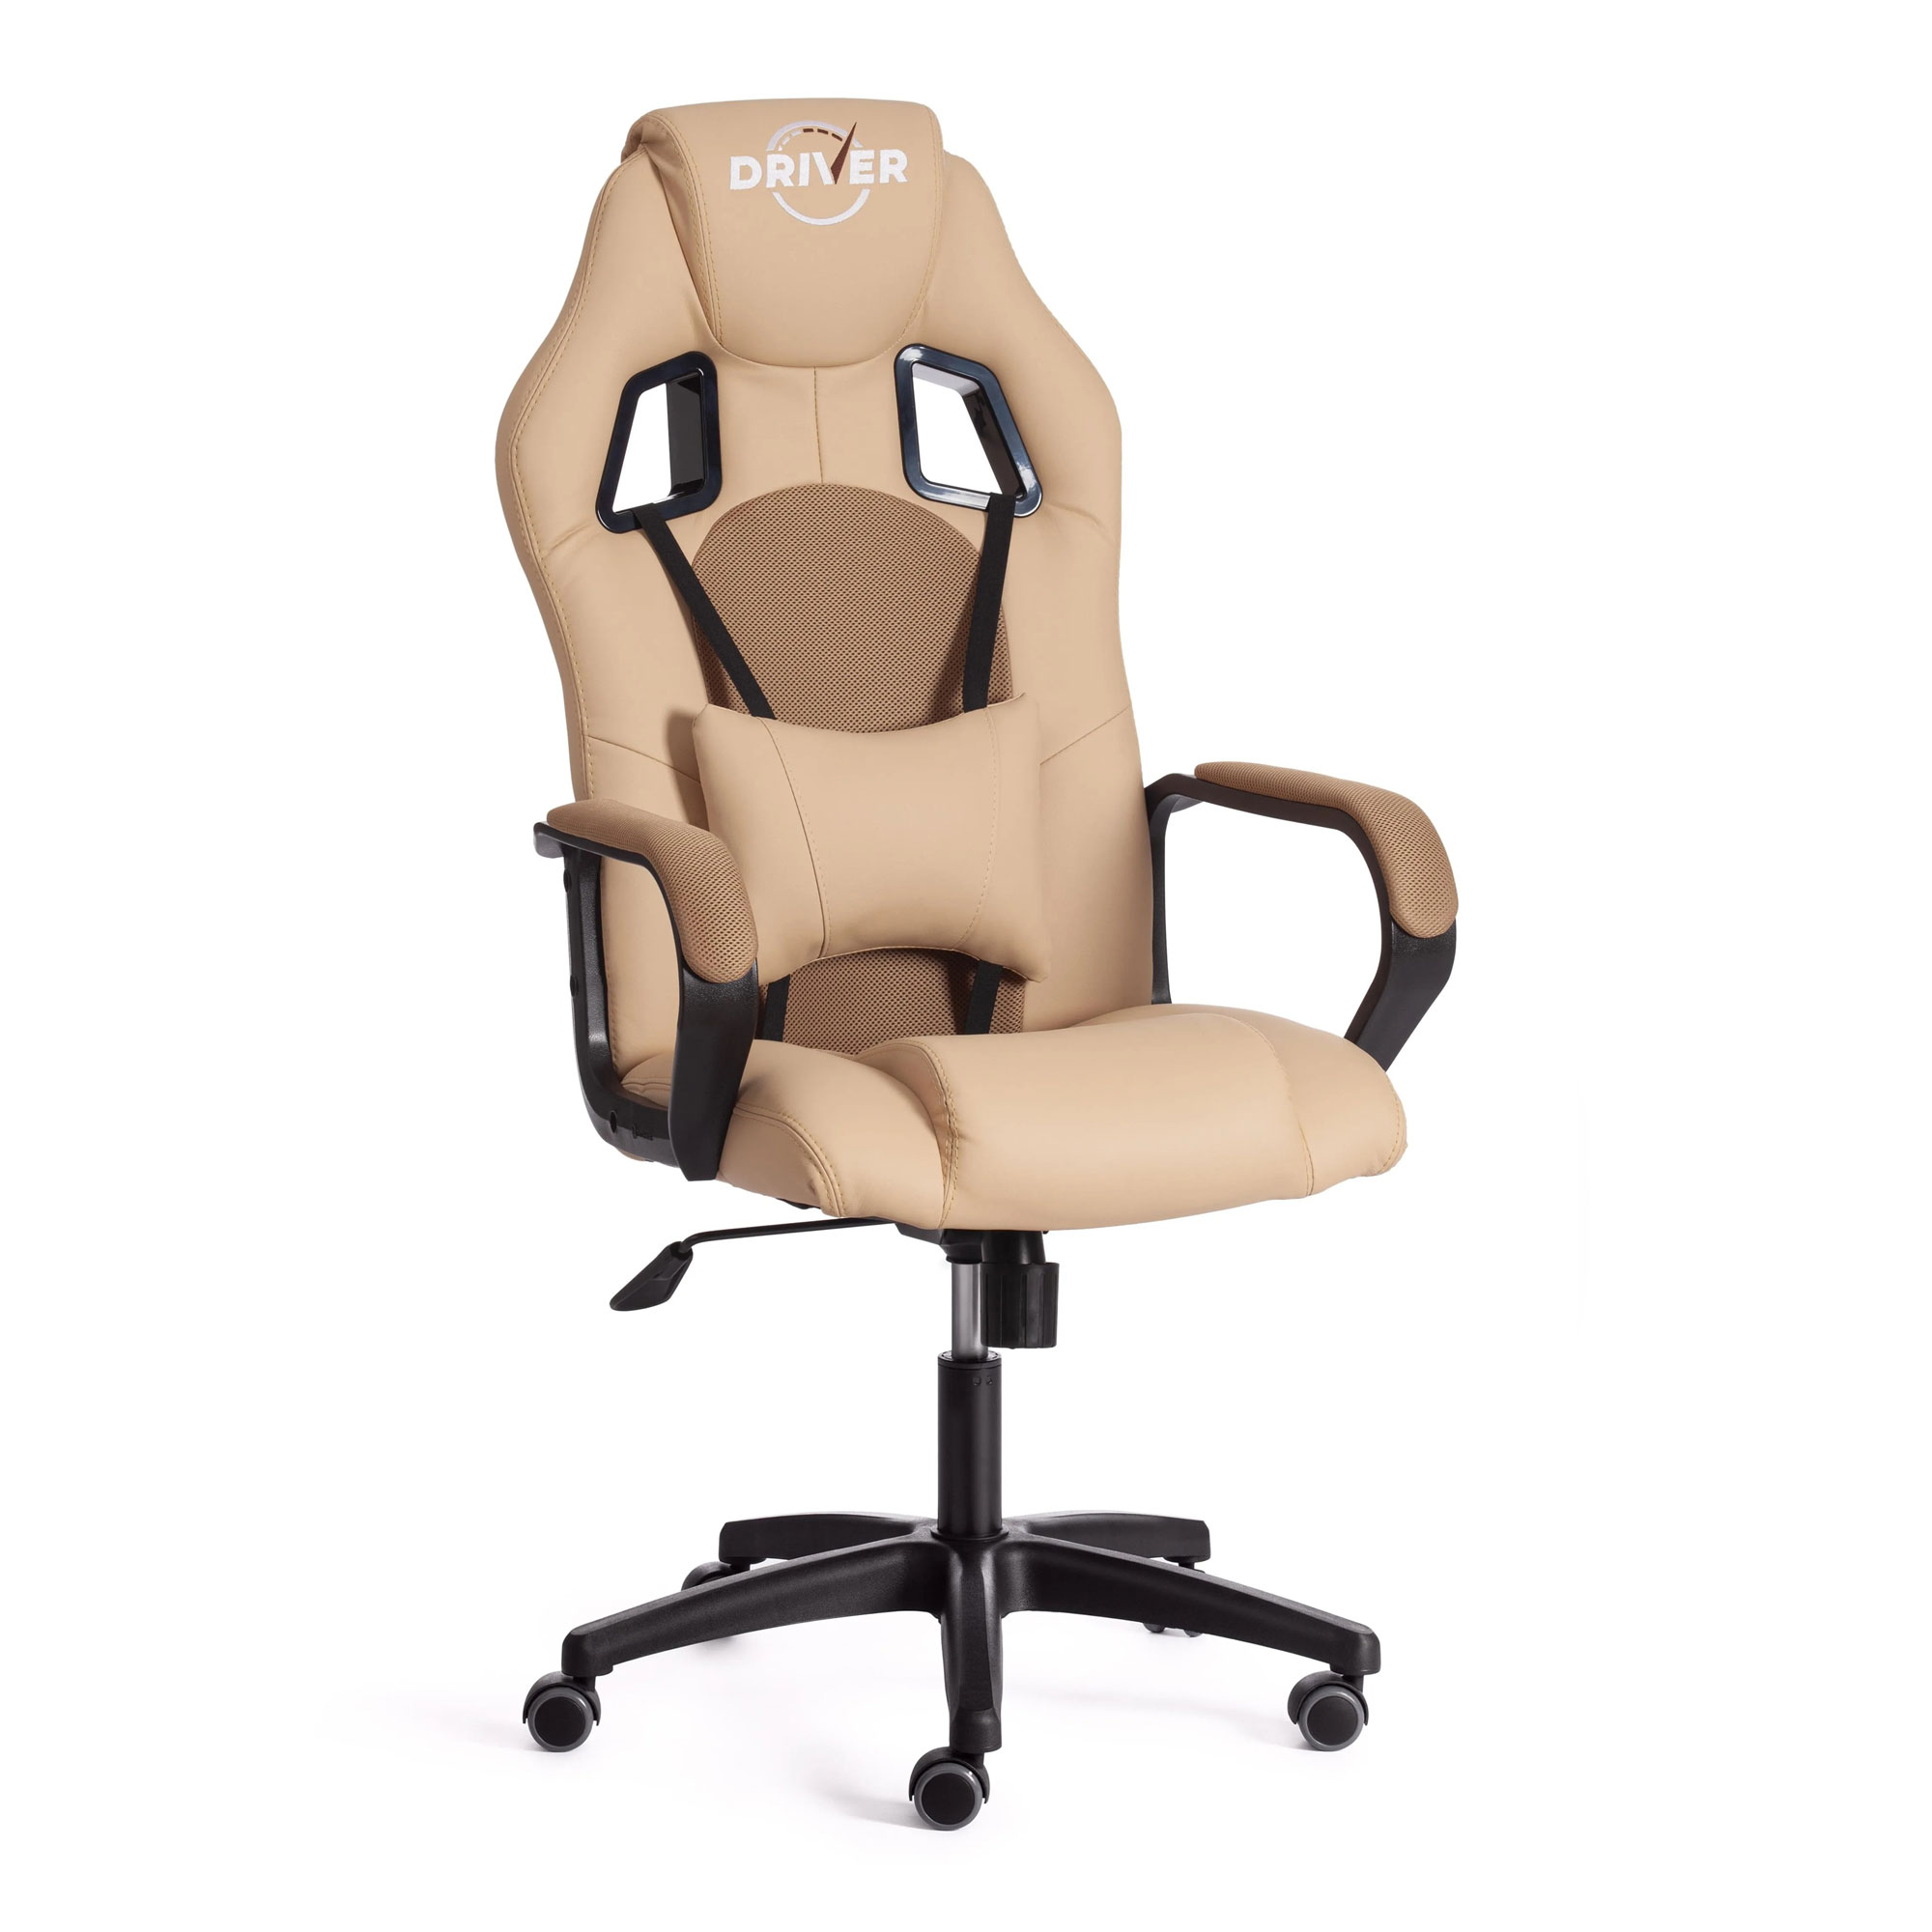 Кресло компьютерное TC Driver искусственная кожа бежевое с бронзовым 55х49х126 см